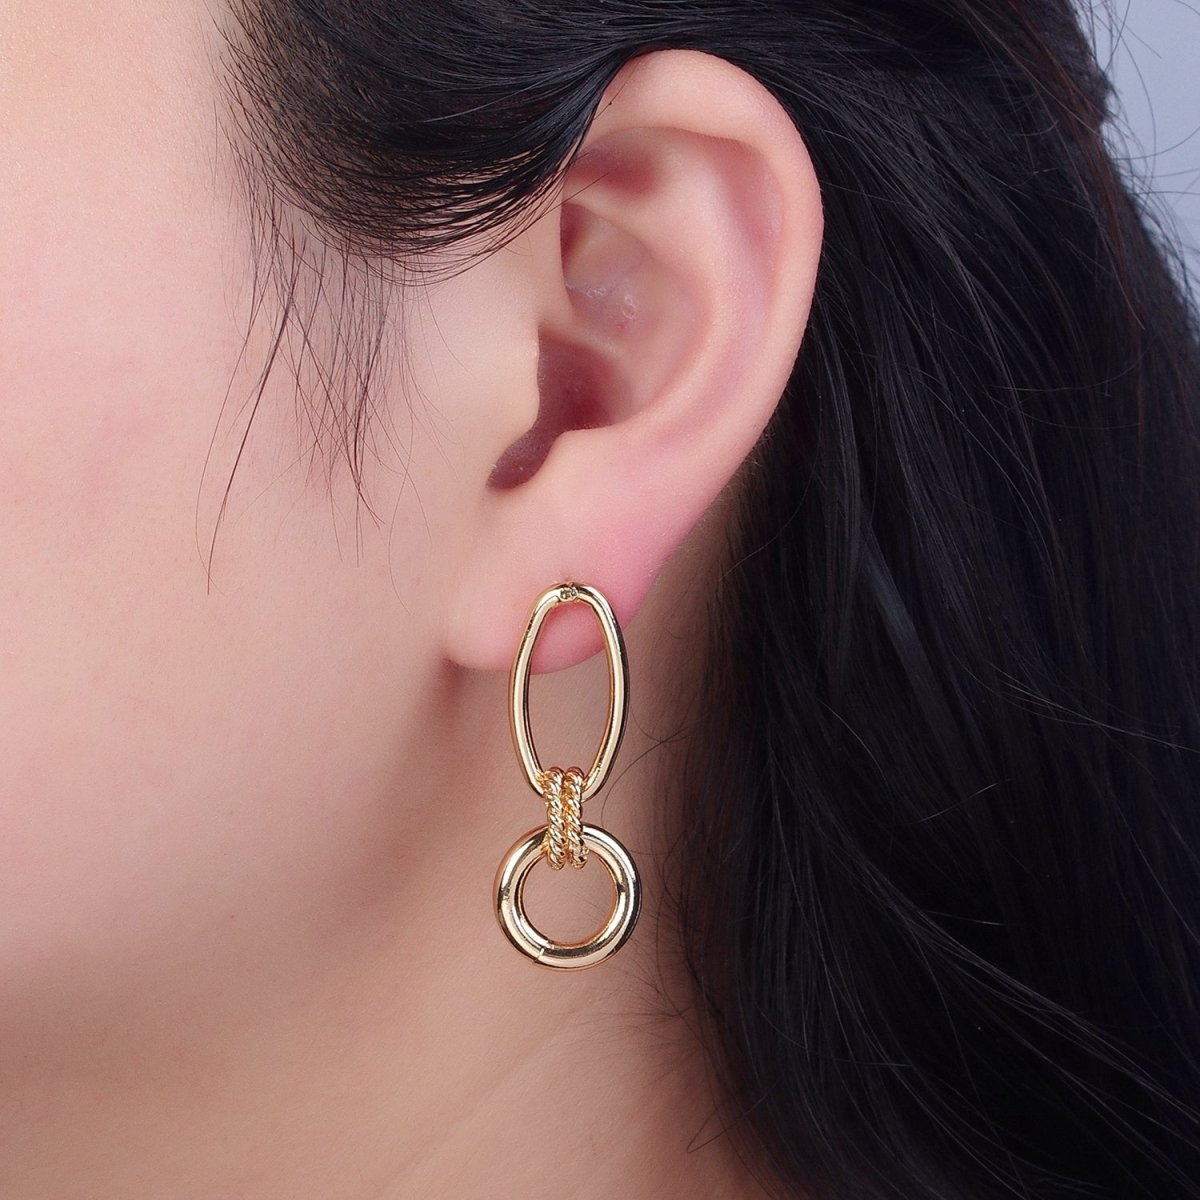 Post Earrings, Gold Hoop Earrings, Post with Hoop, Oval Stud Earring V-394 - DLUXCA